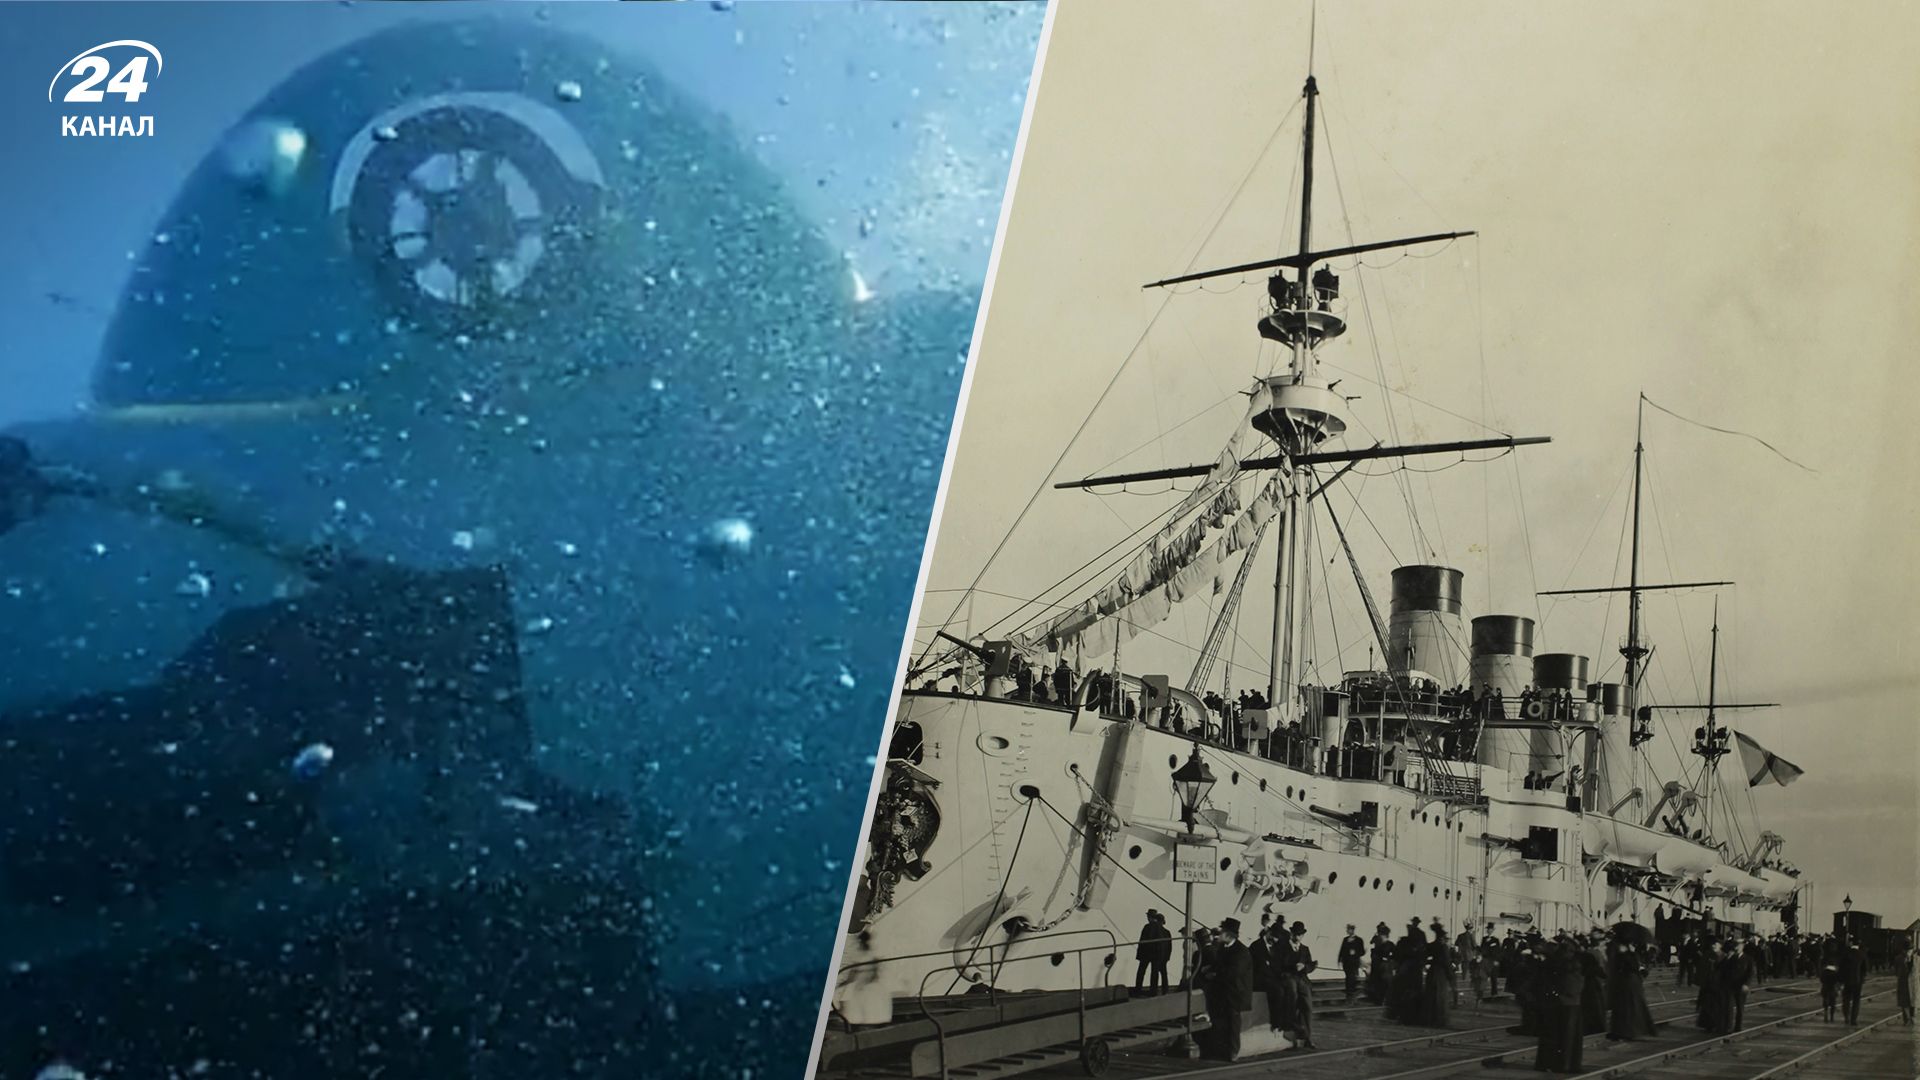 Субмарина Титан зникла з туристами, які прямували на Титанік - чи реально їх врятувати